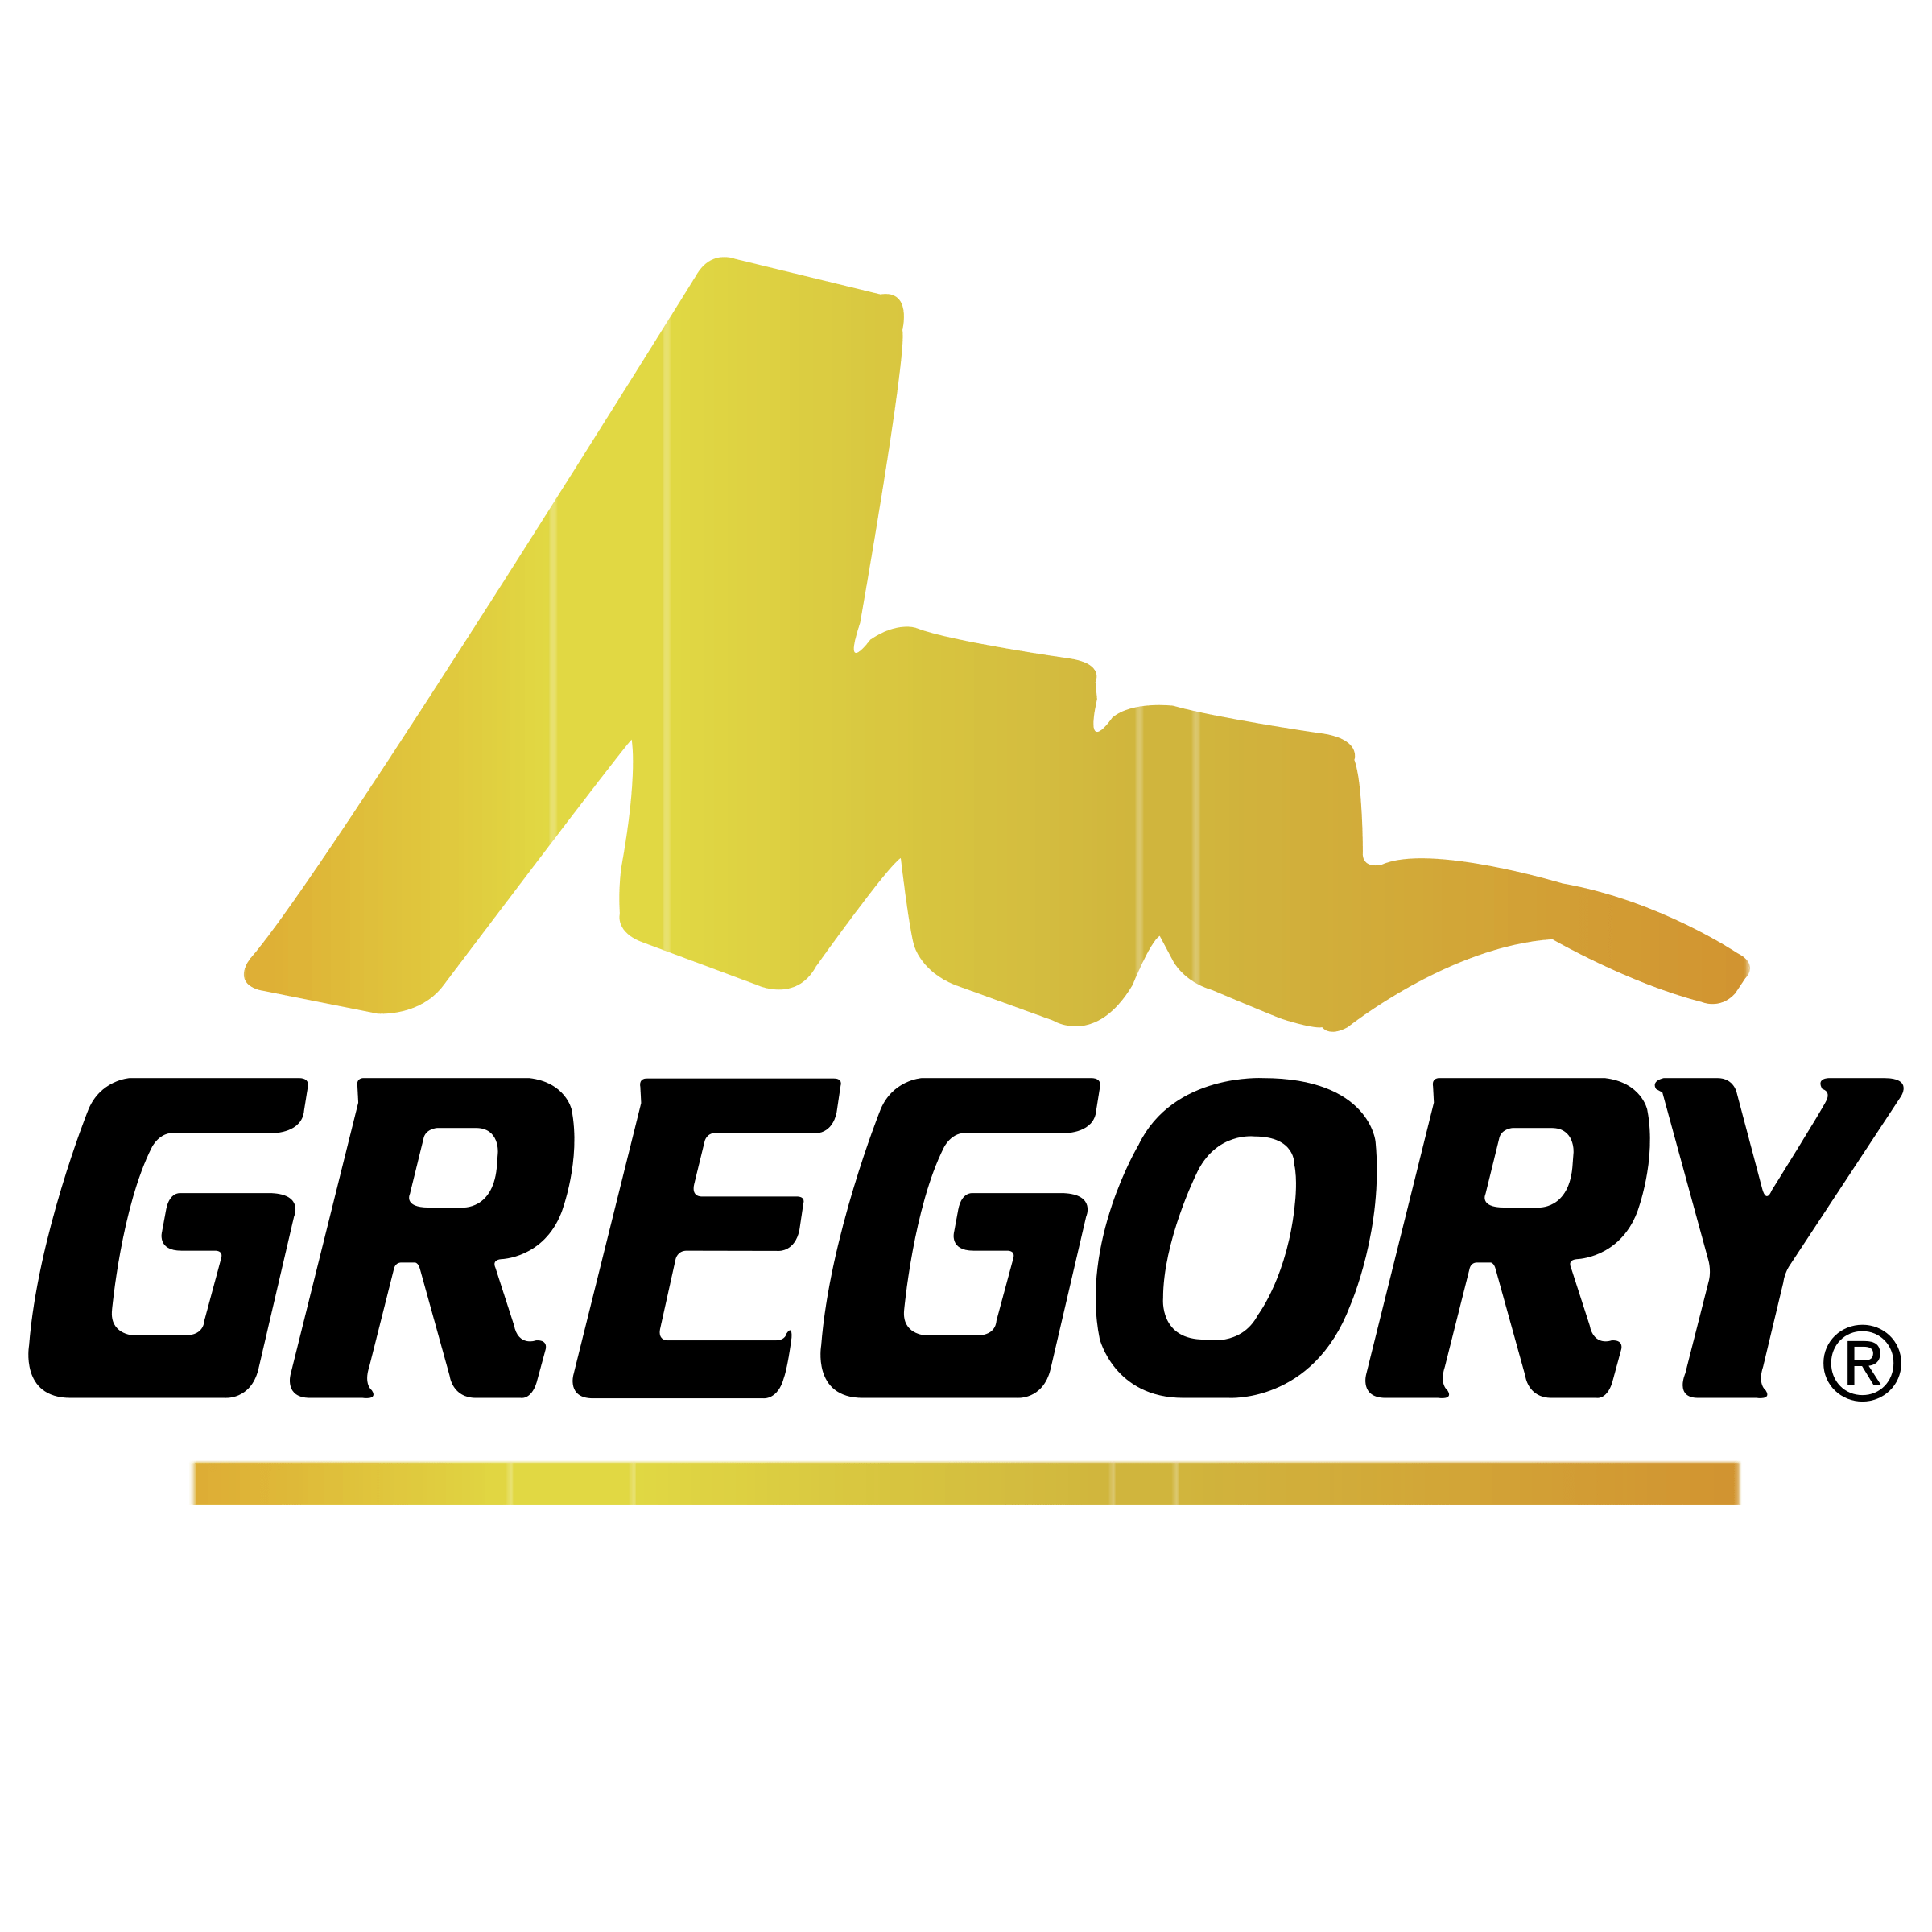 Gregory Logo - Gregory Logo PNG Transparent & SVG Vector